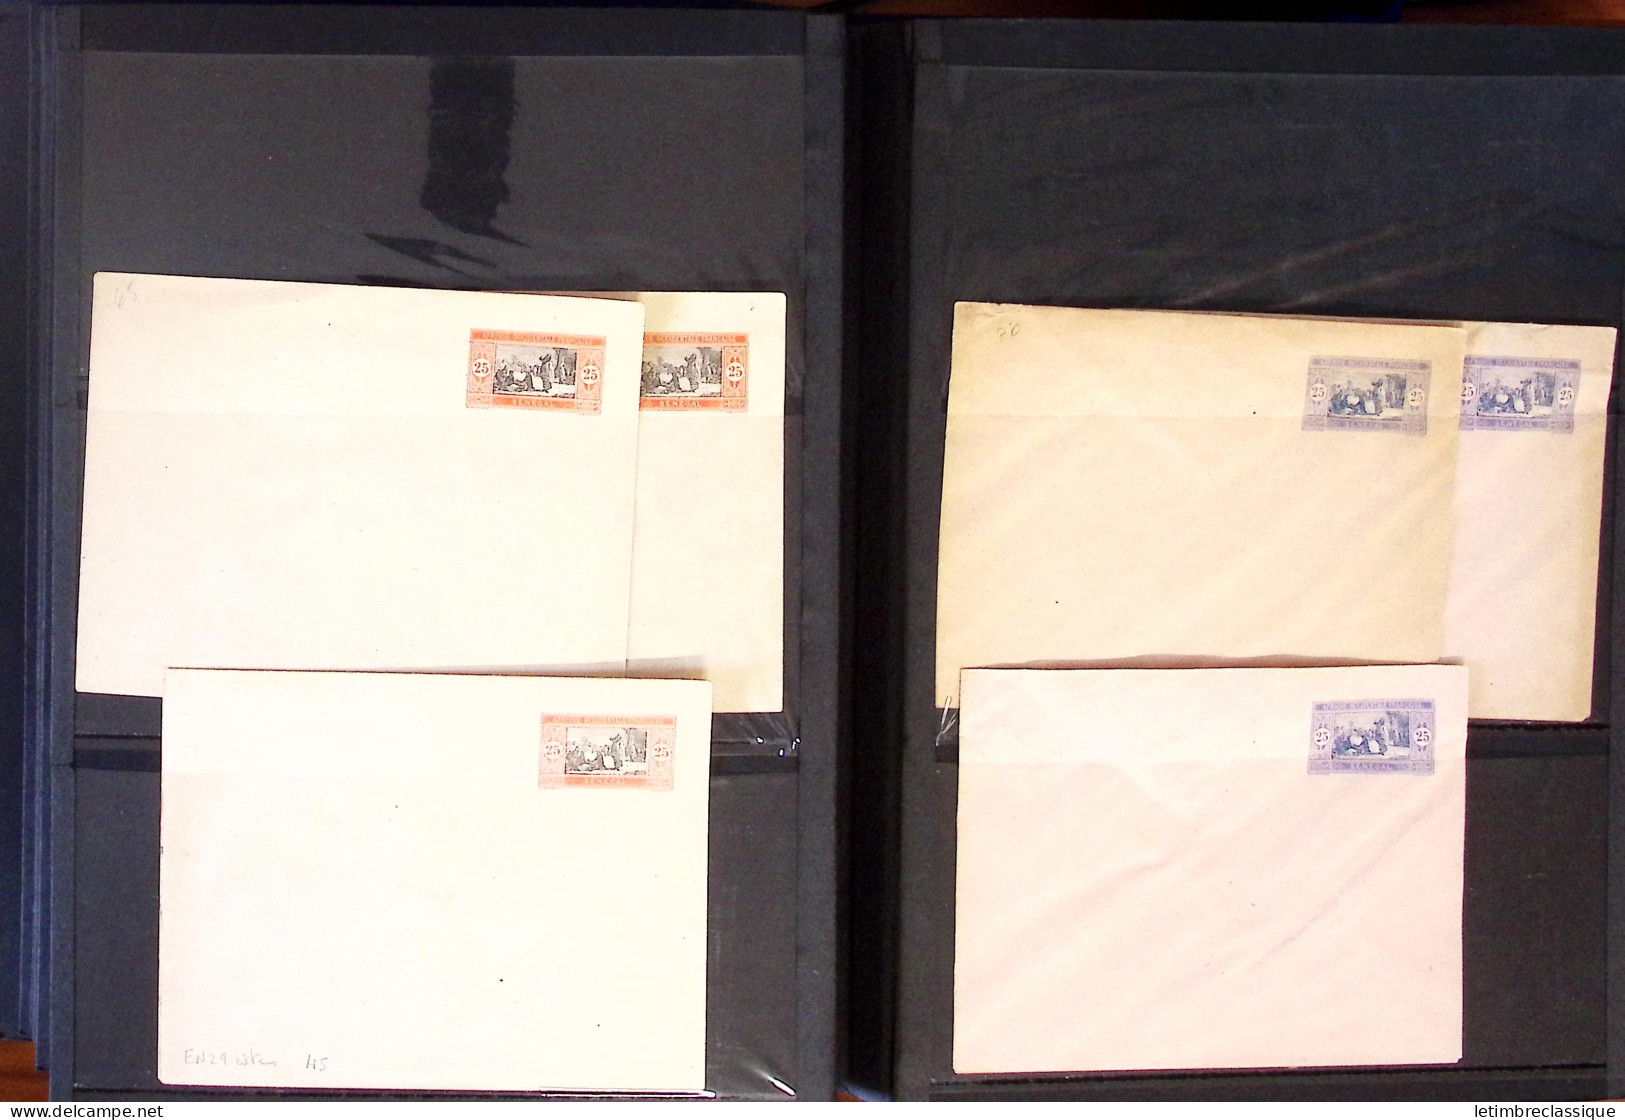 Lettre 1880-1977, Collection en un classeur de près d'une centaine d"entiers postaux, principalement neufs, en majorité 